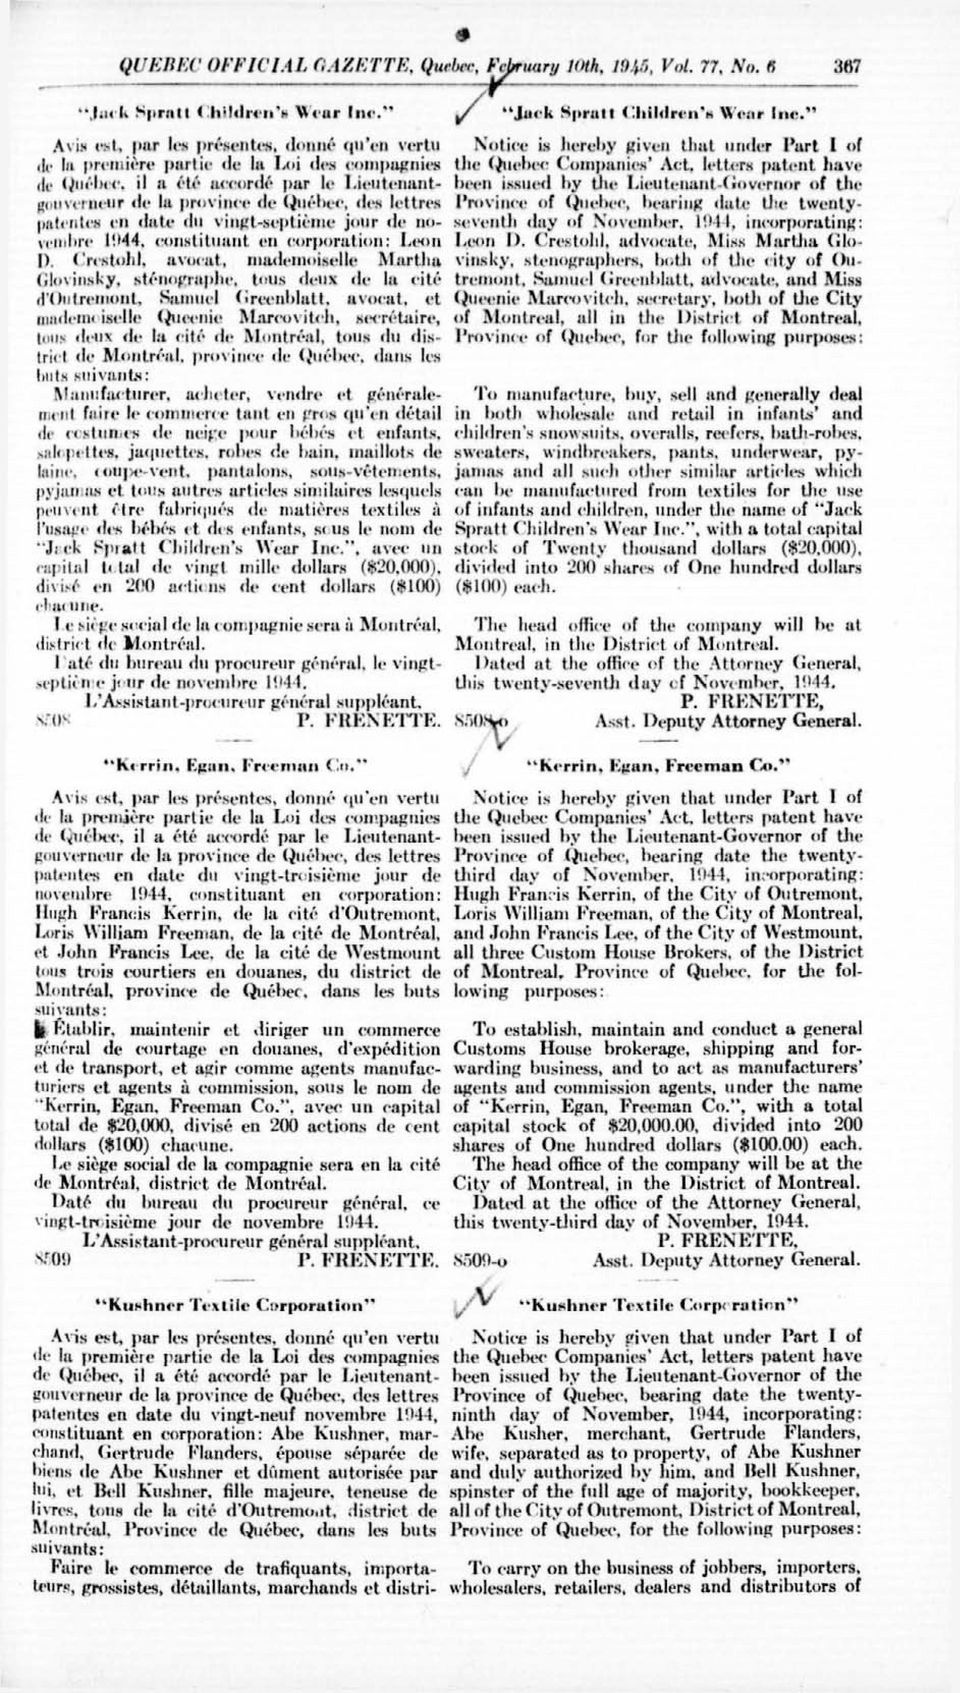 lettres patentes en date «lu vingt-neuf novembre 1044, constituant en corporation: Abc Kushner.